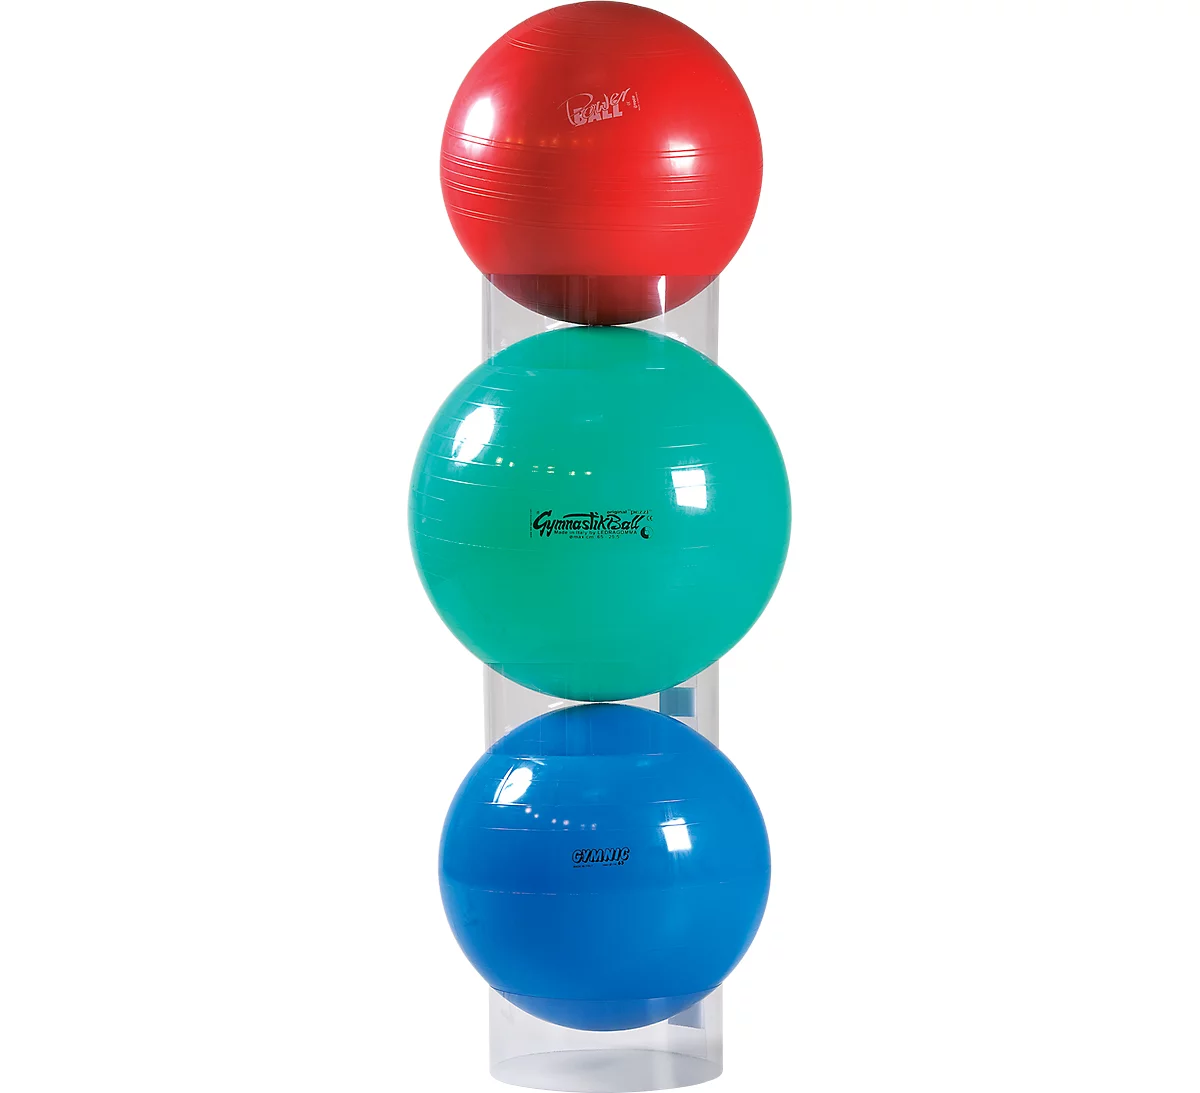 Anneaux de rangement pour ballons de gymnastique, transparent, pour ballons  de 55 à 120 cm, lot de 3 à prix avantageux